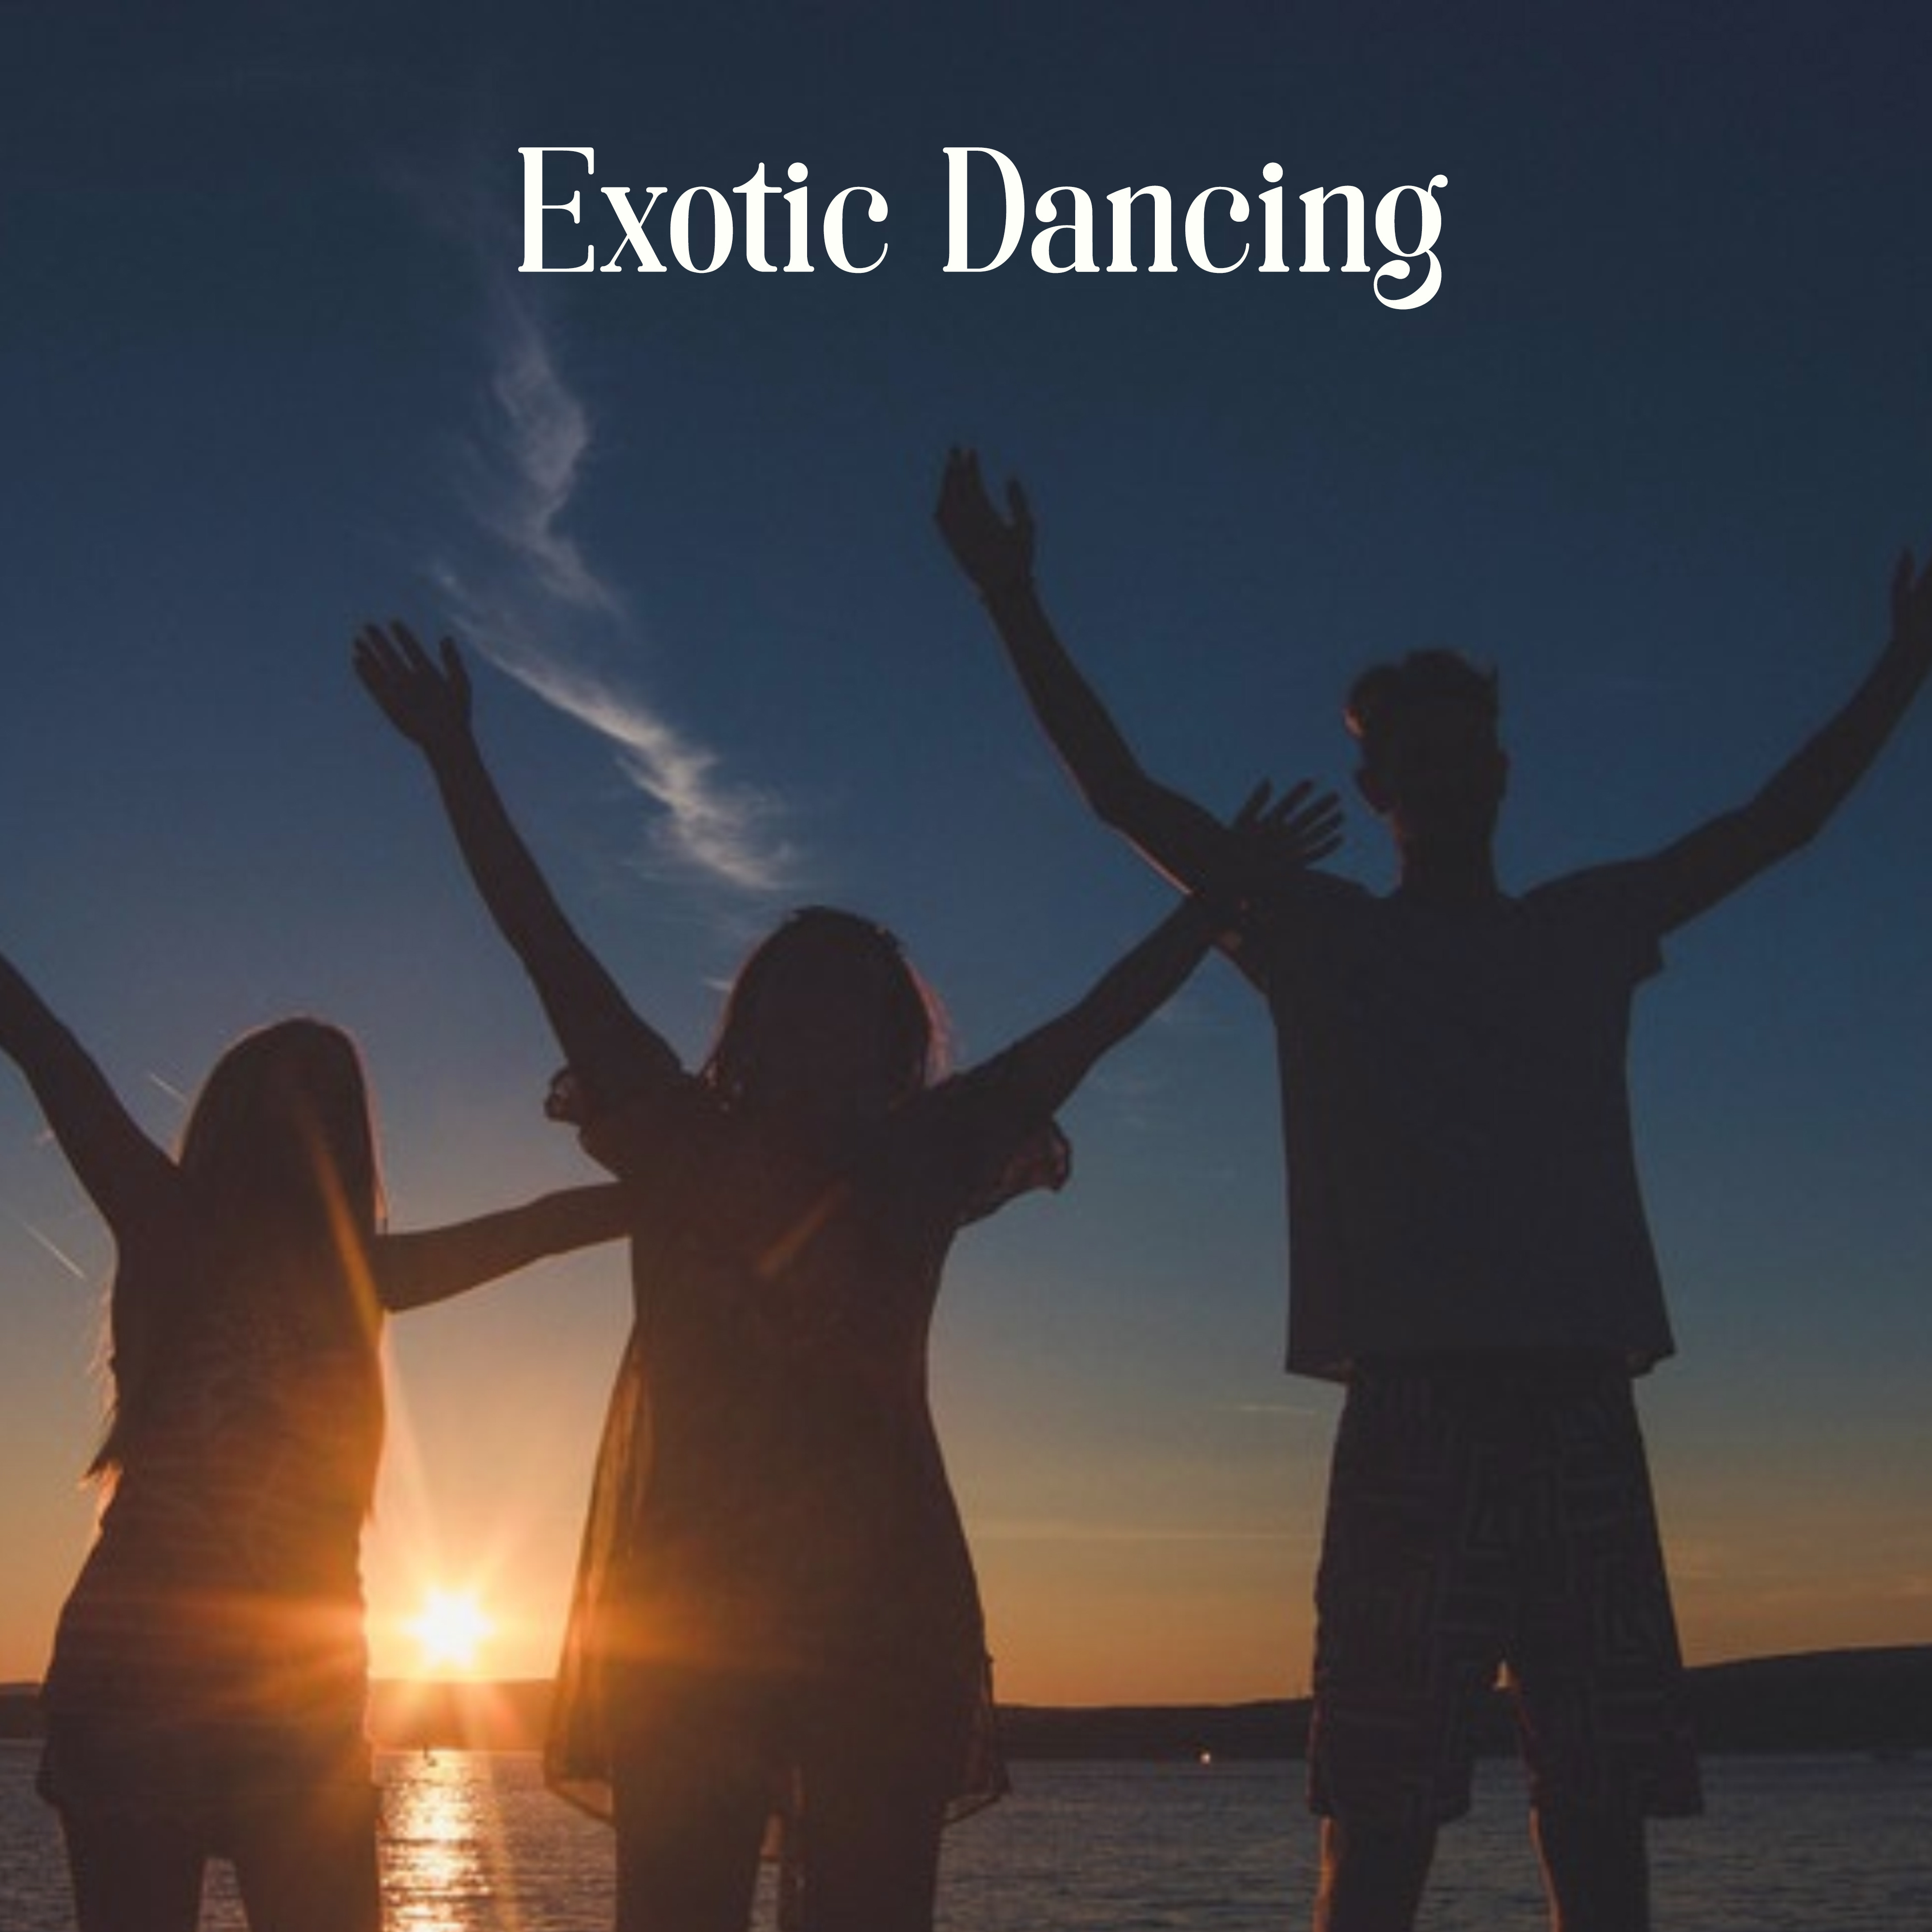 Exotic Dancing - Hot Rhythms, Nice Music, Good Atmosphere, Cool Surroundings